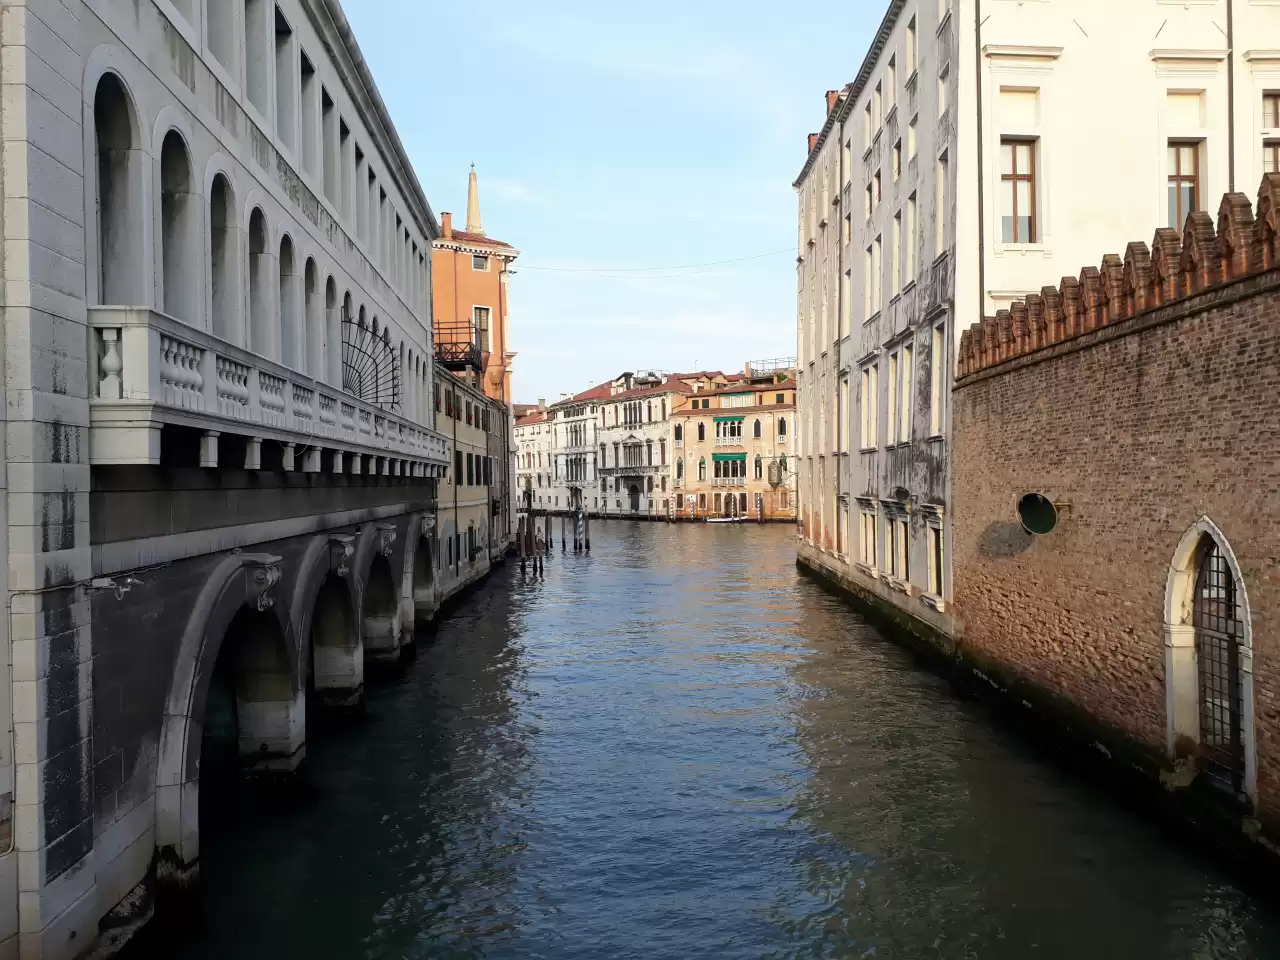 Venedik, Turist Akışını Yönetmek ve Yoğunluğu Azaltmak için 25 Nisan 2024'ten İtibaren Belirli Günlerde Ücretli Giriş Uygulamasına Geçiyor